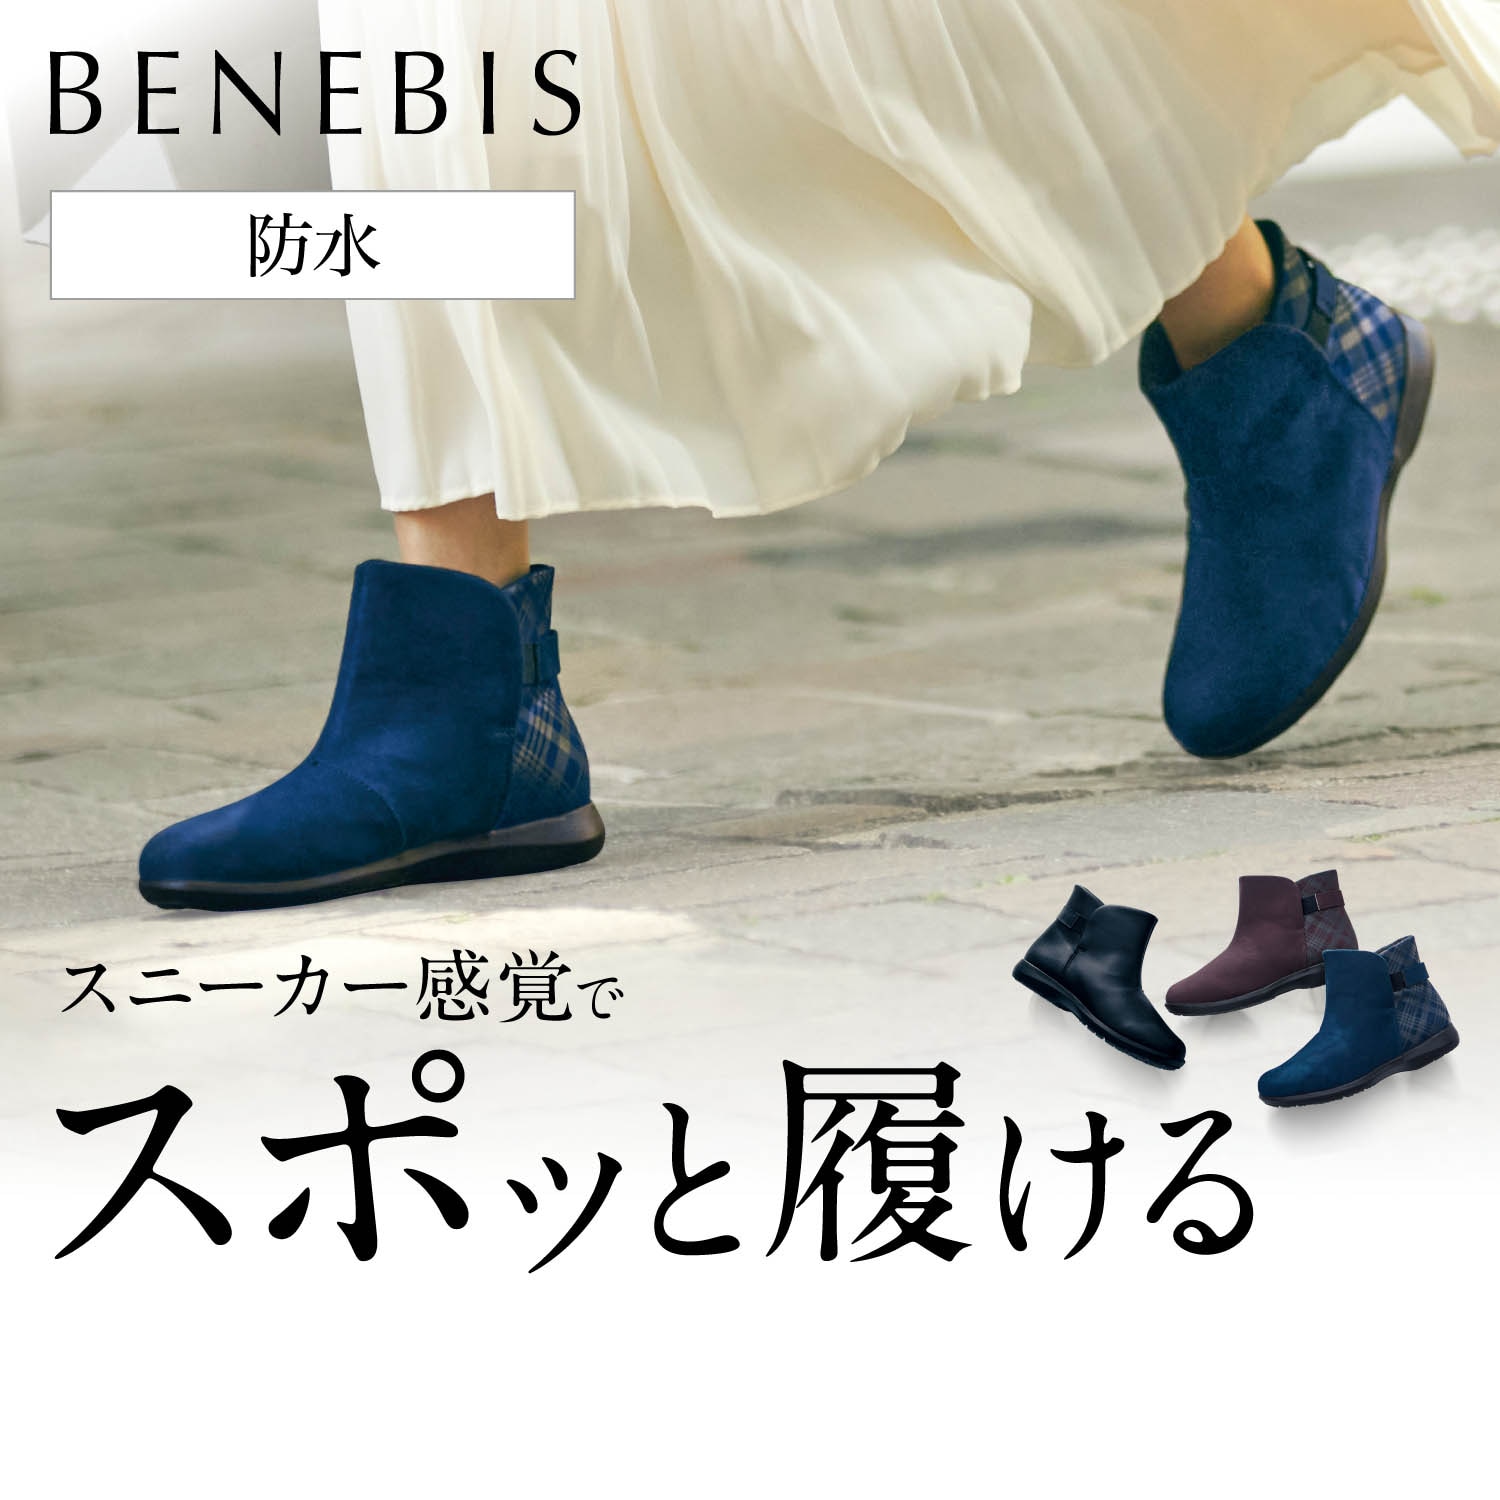 【ベネビス/BENEBIS】【10月25日まで返品送料無料】 スニーカーみたいに歩けるスリッポンブーツ画像